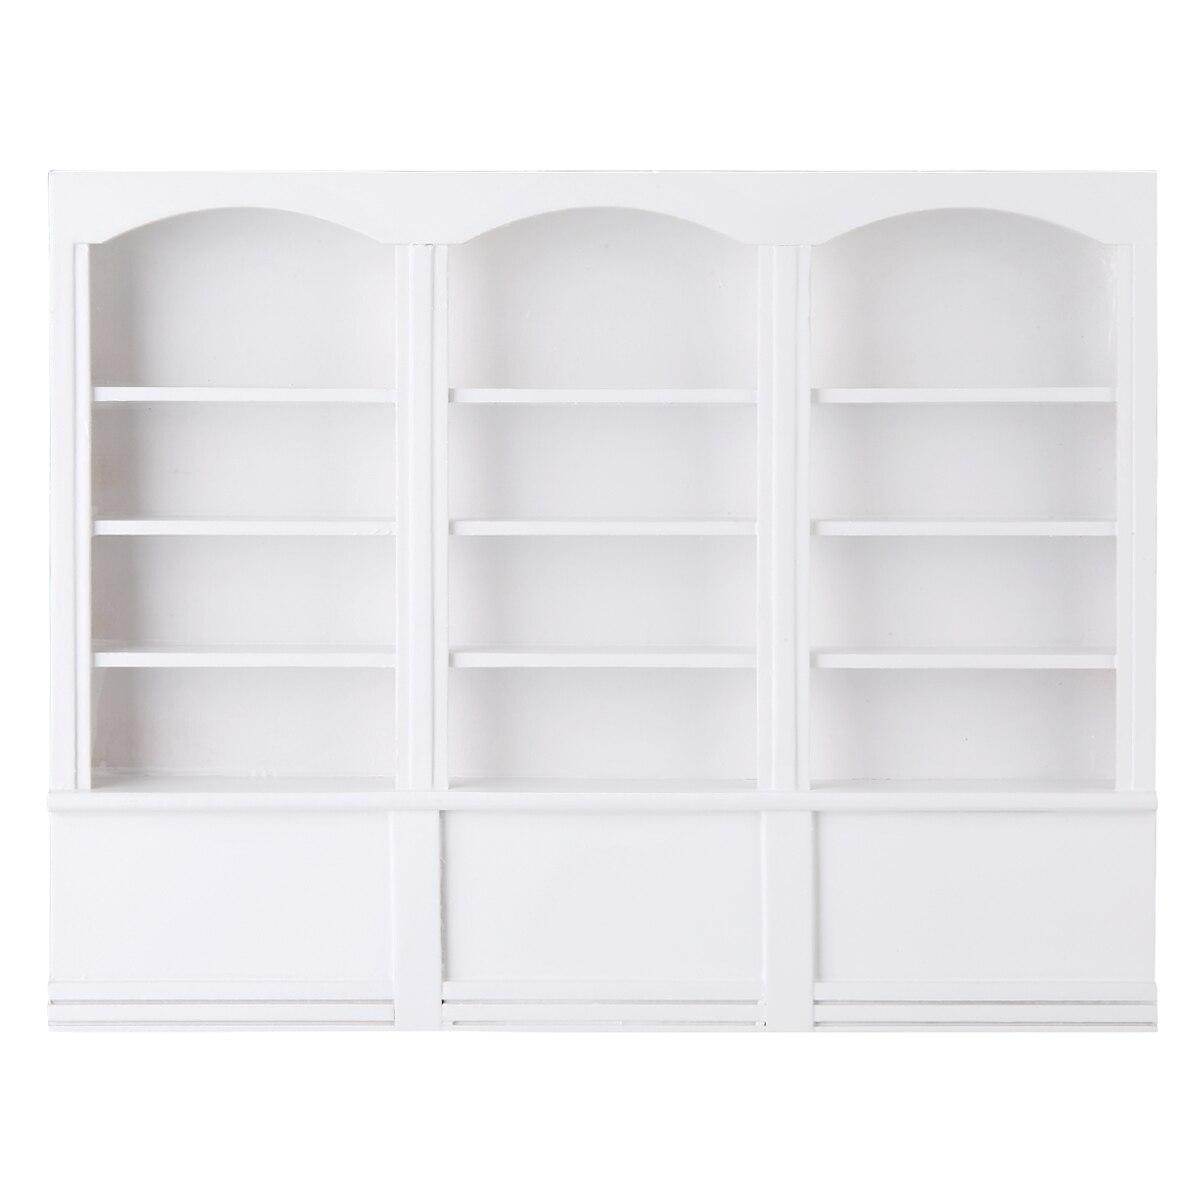 Изображение товара: 1 шт. 22,9x2,7x17,7 см миниатюрная мебель деревянный белый шкаф книжный шкаф для 1/12 аксессуары для кукольного домика